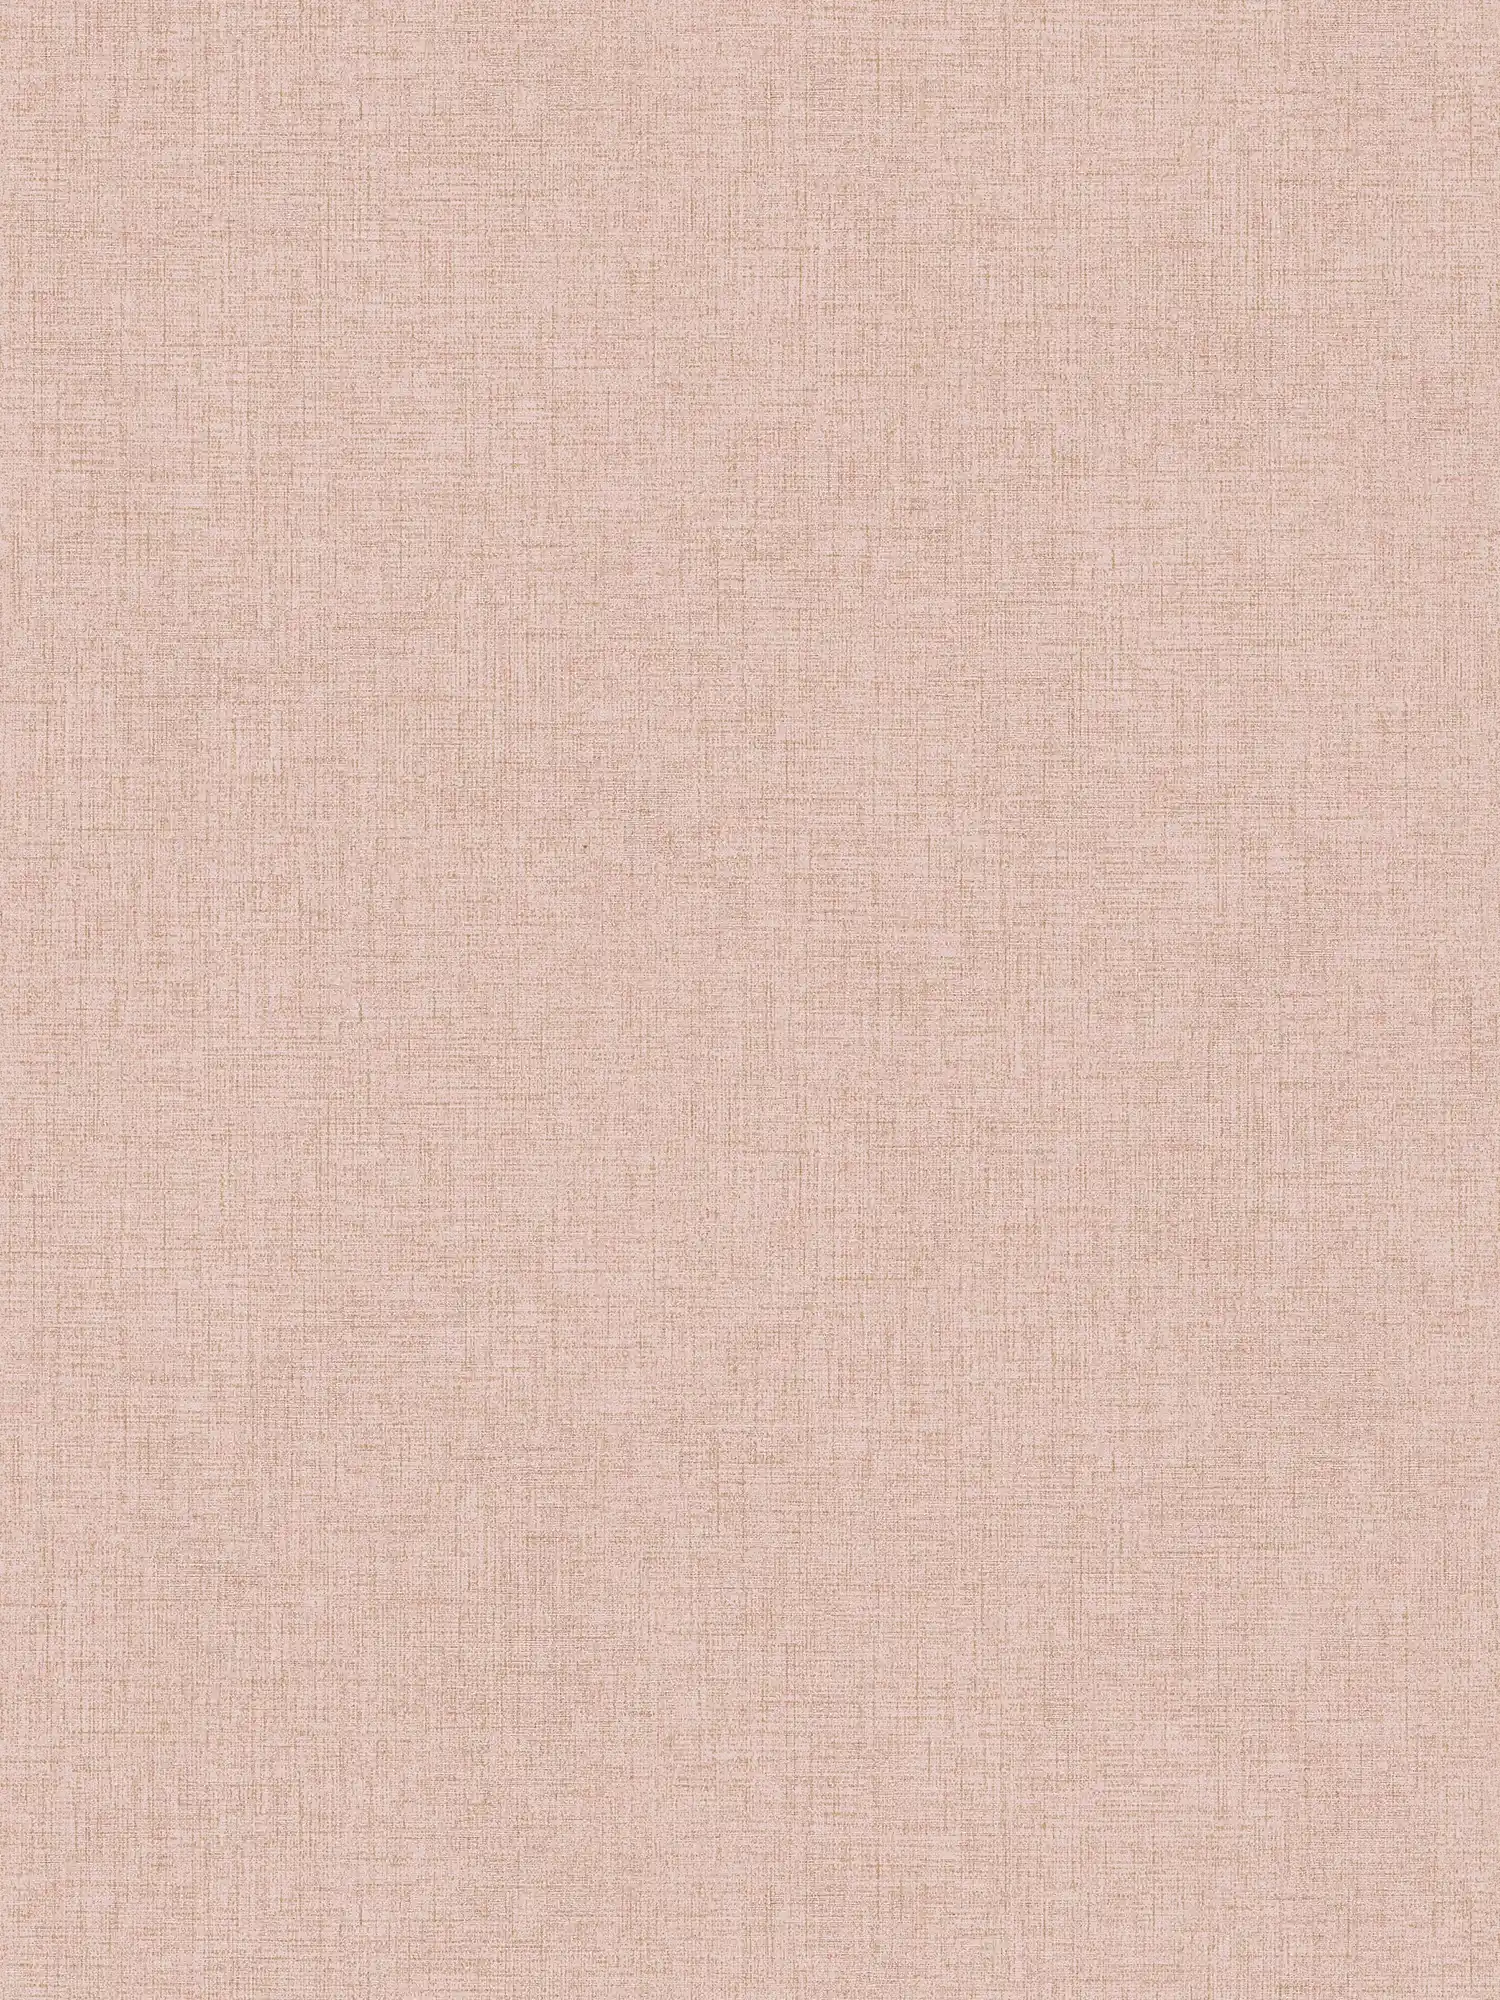 Papier peint uni avec aspect lin discret - rose
